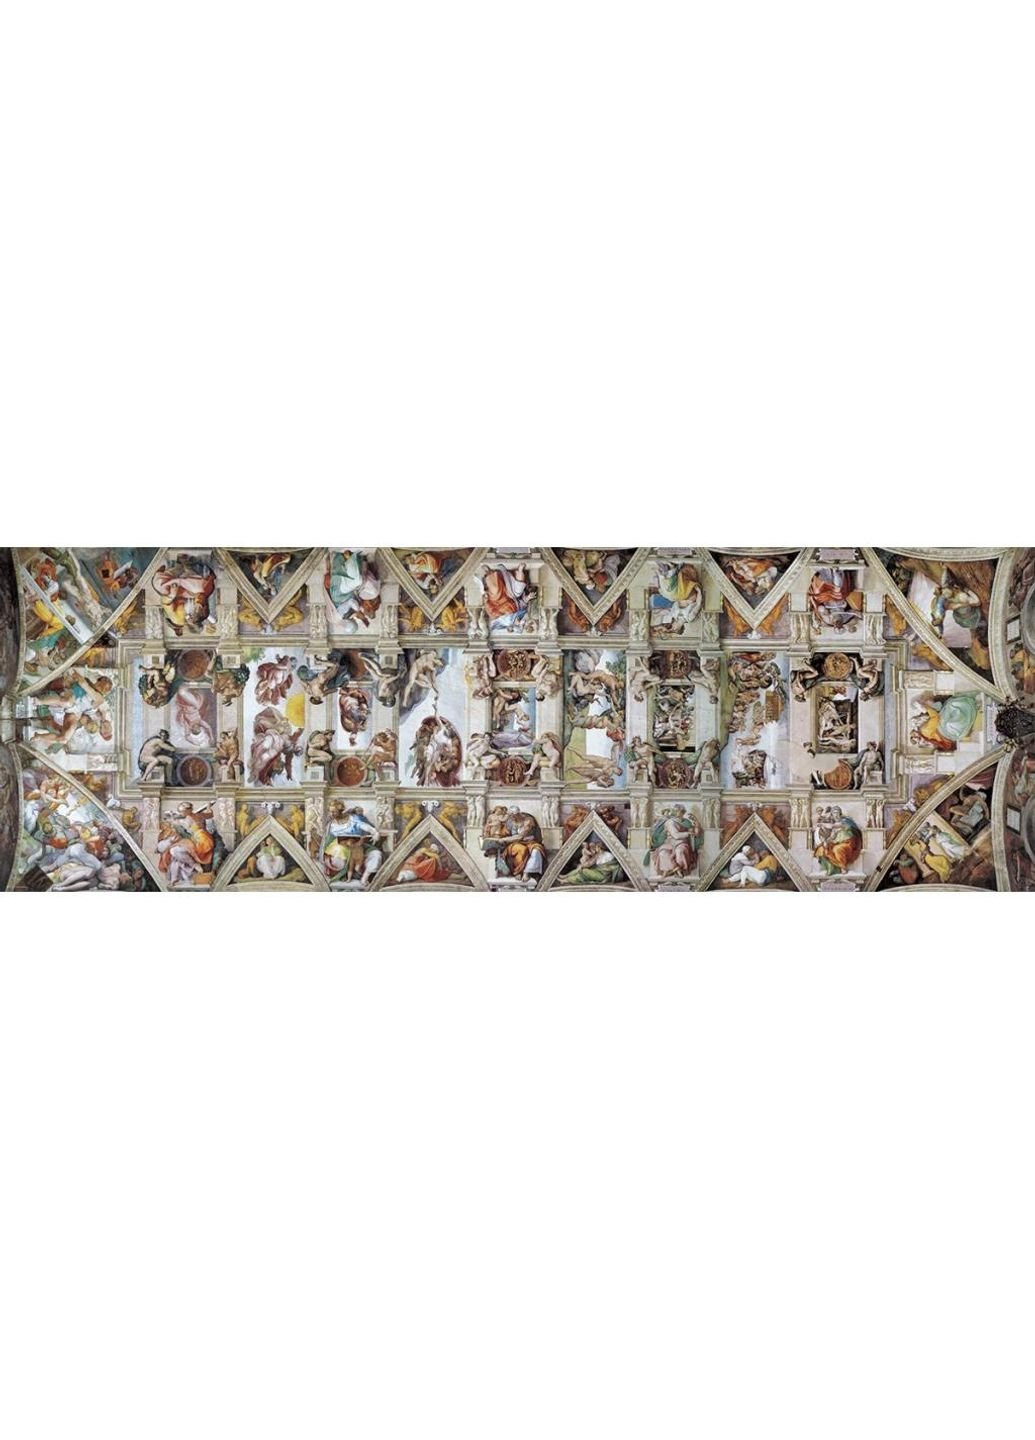 Пазл Сикстинская капелла. Микеланджело, 1000 элементов панорамный (6010-0960) Eurographics (252419213)